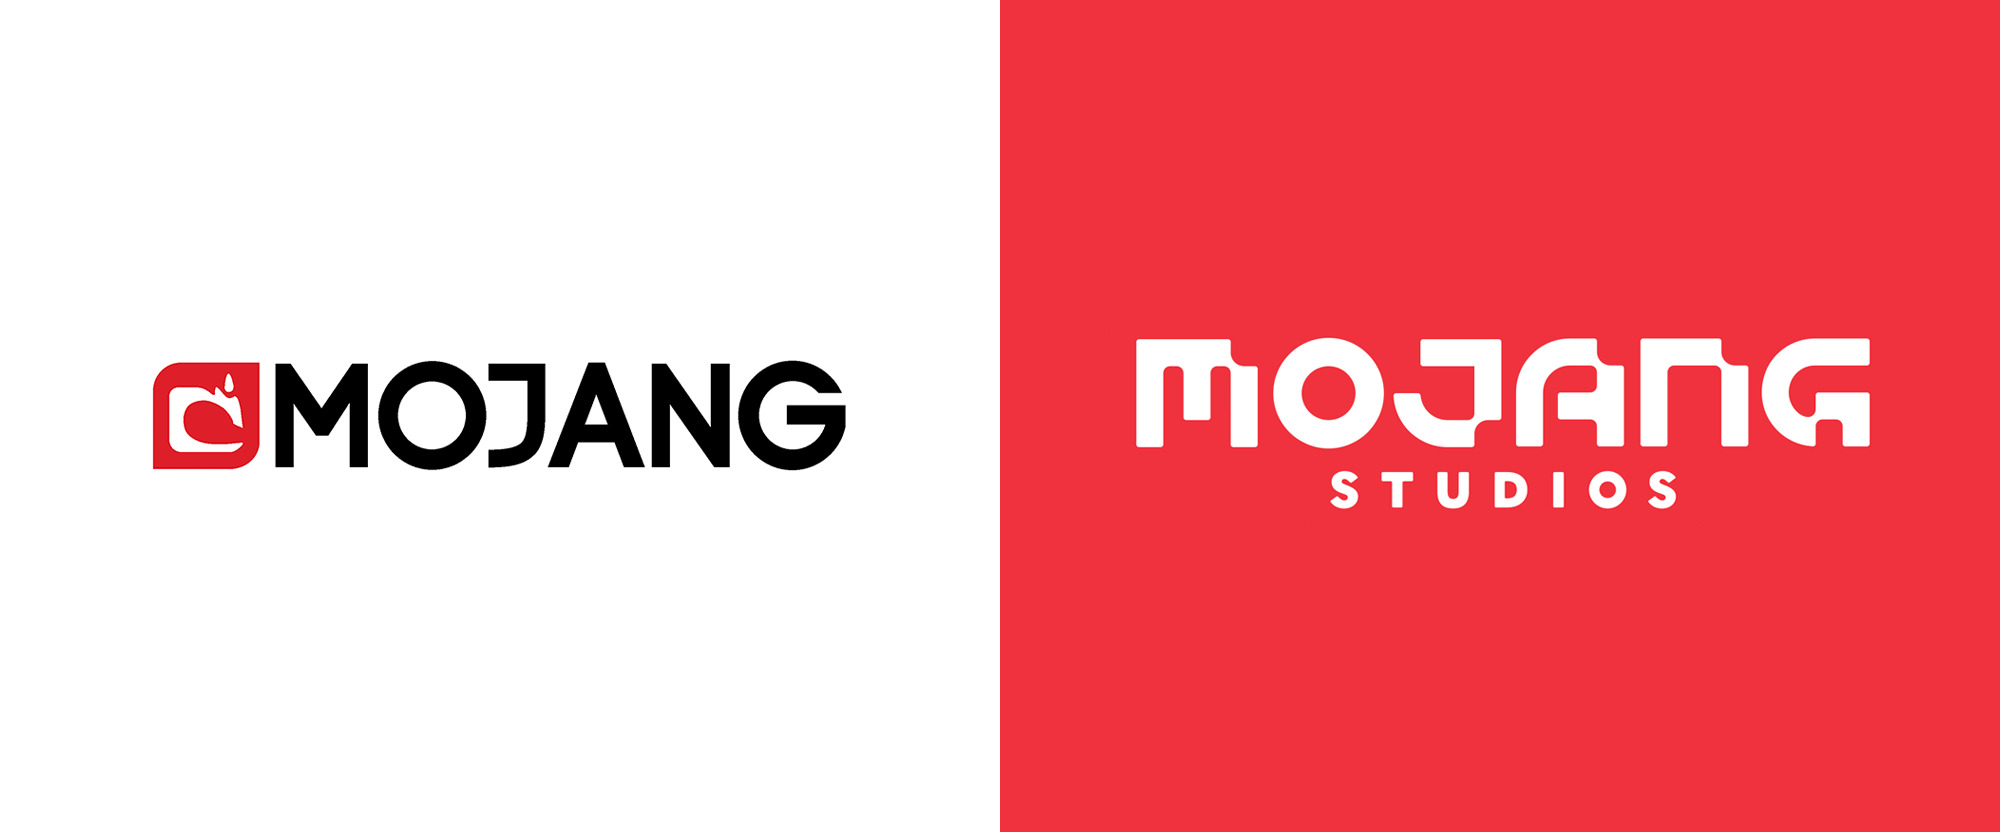 mojang-logo-before-after